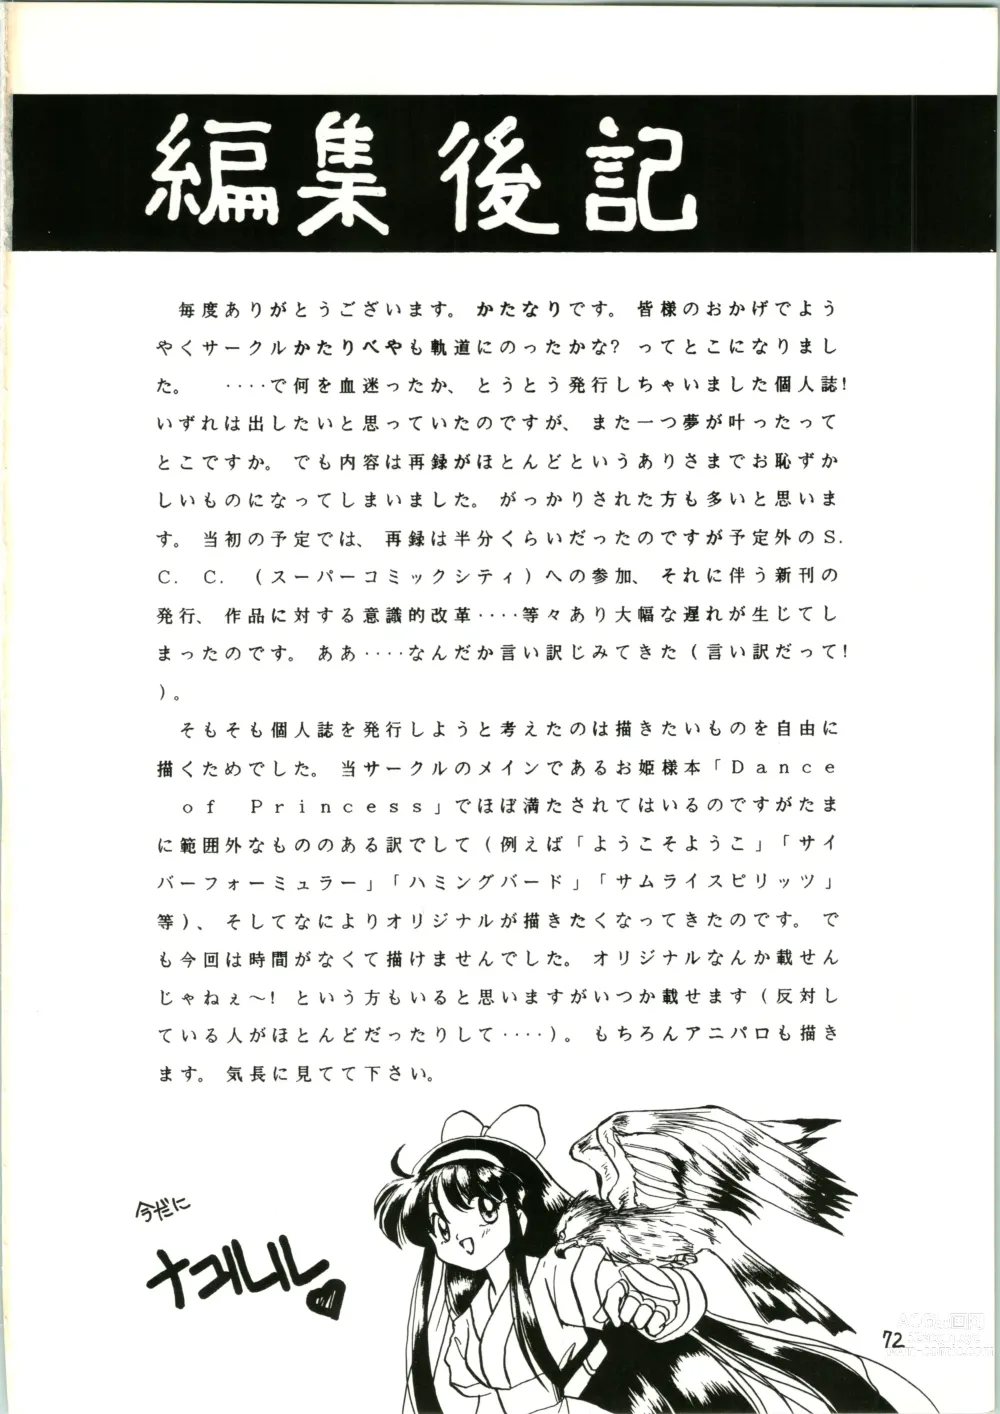 Page 72 of doujinshi Katatoki